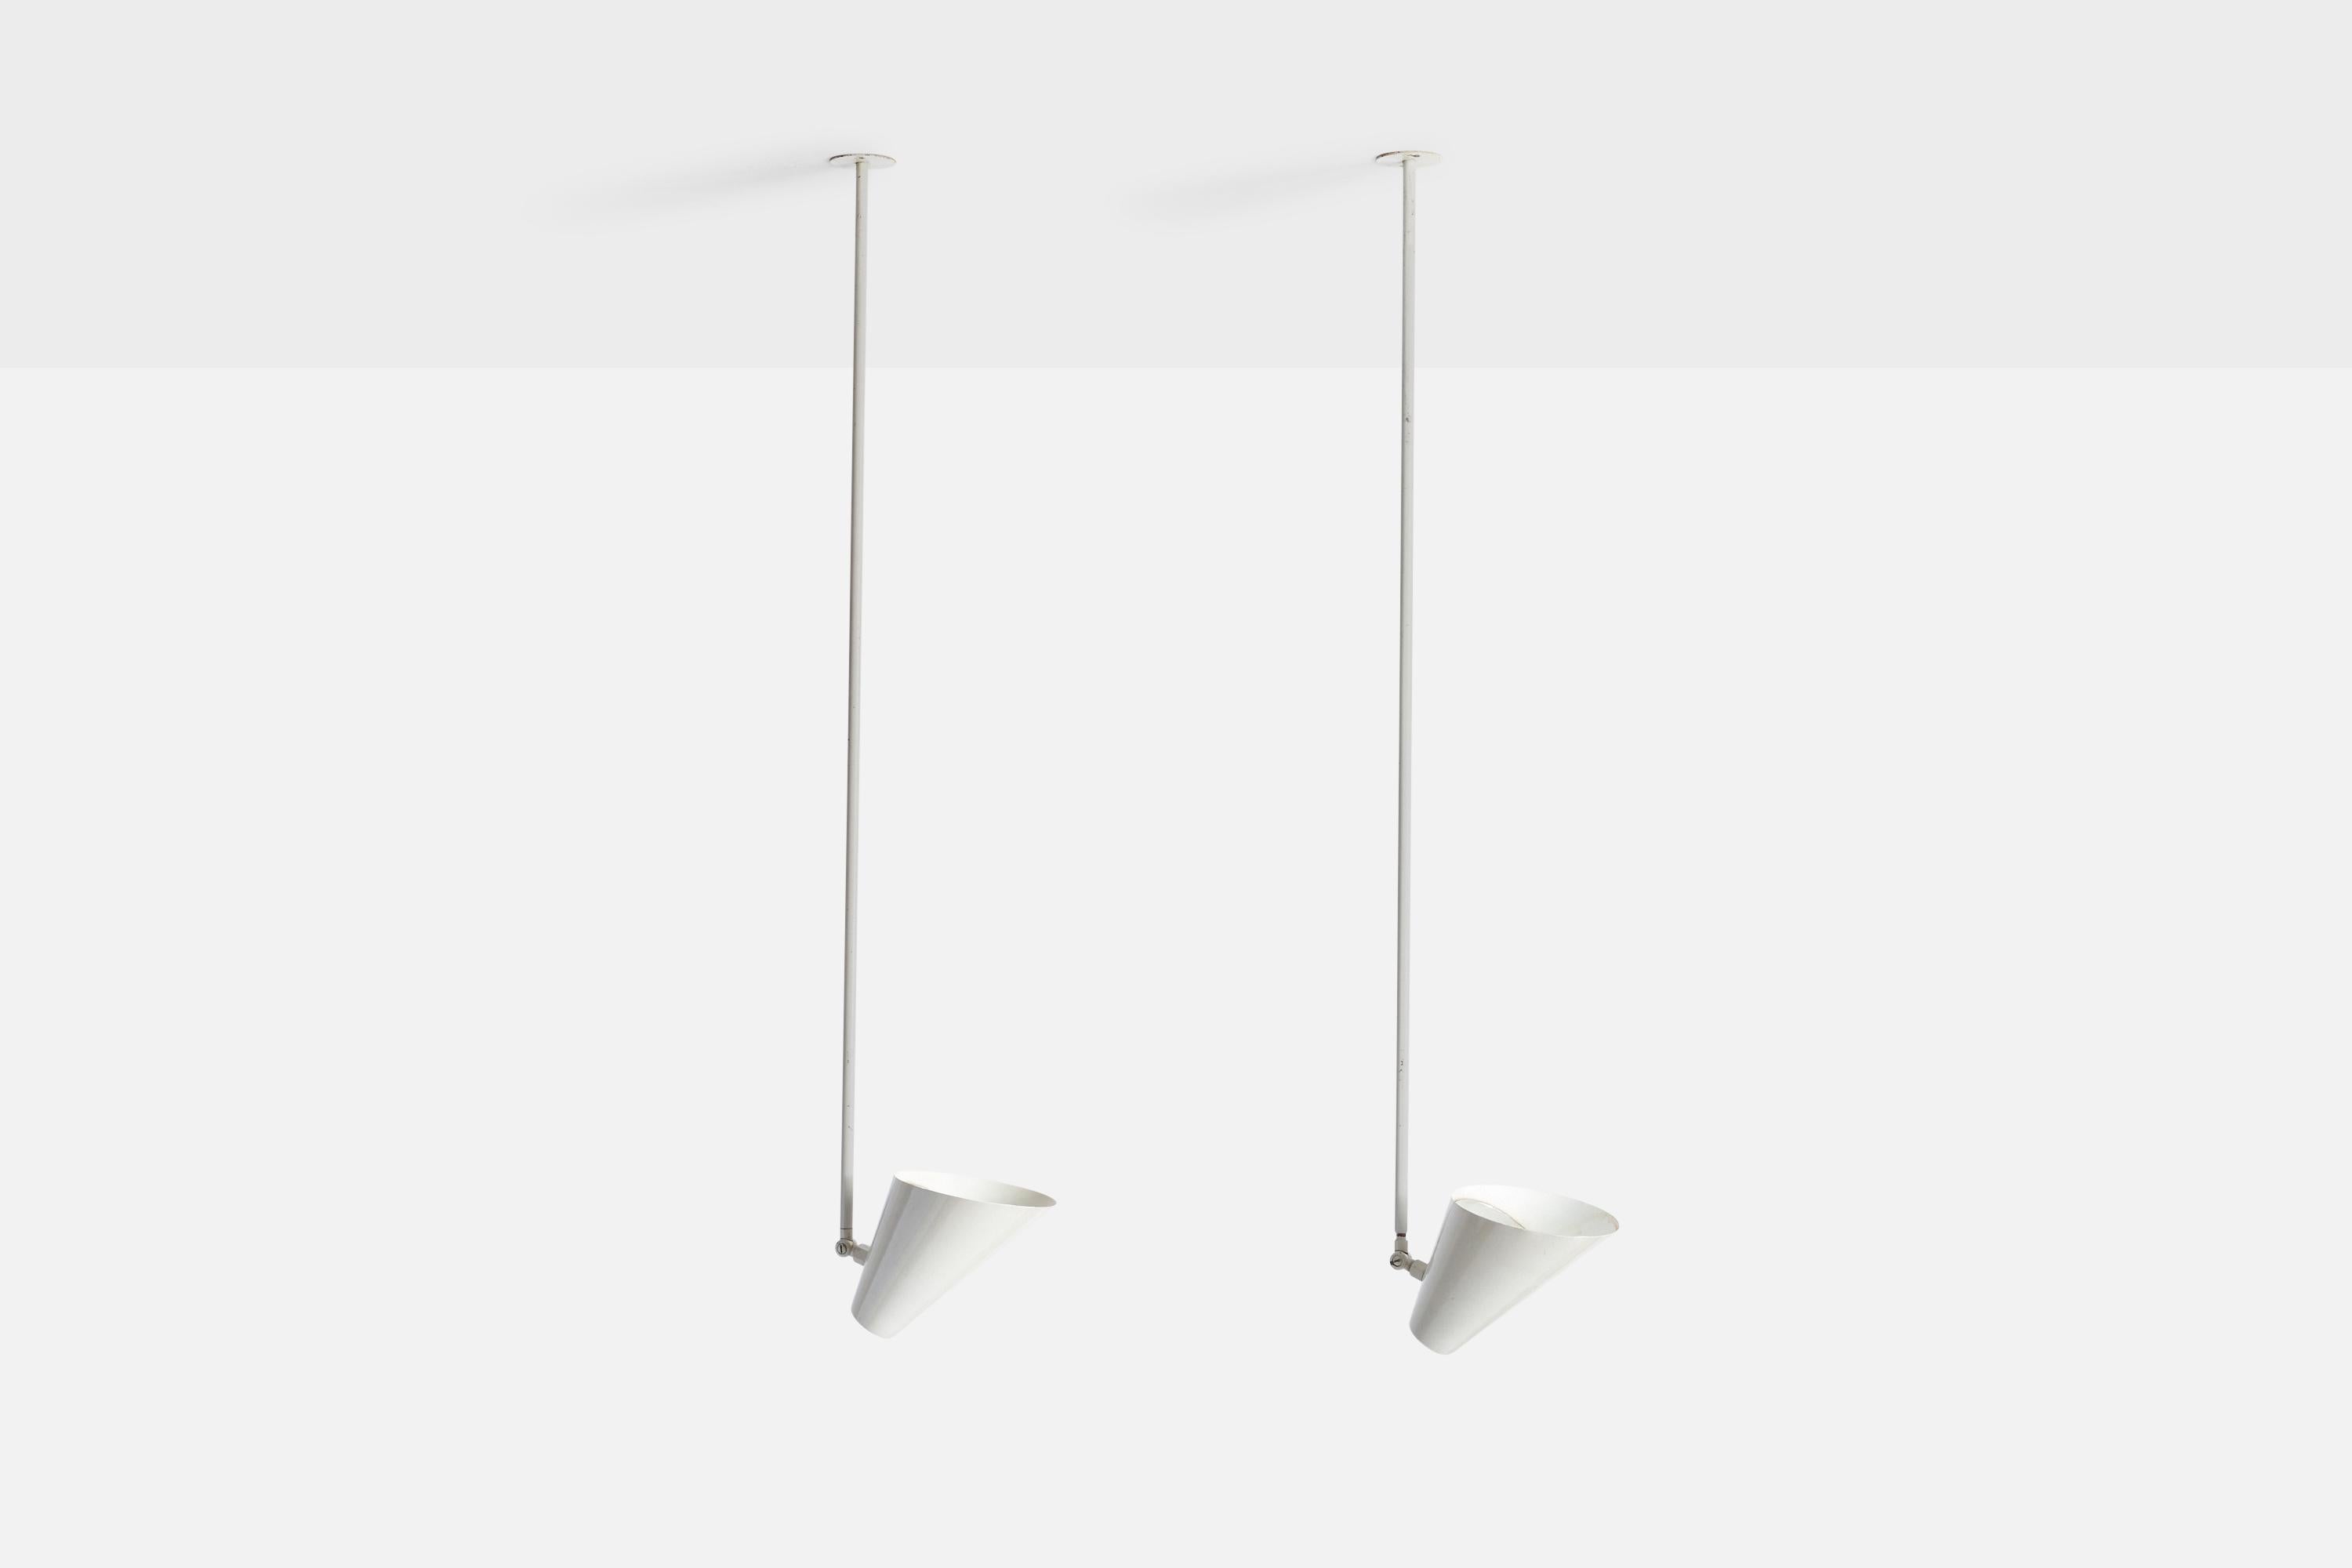 Paire de lampes suspendues en métal laqué blanc conçues par Vilhelm Lauritzen et produites par Louis Poulsen, Danemark, C.1950.

Dimensions de l'auvent (pouces) : N/A
La douille accepte les ampoules E-26 standard. 2 douilles. Il n'y a pas de